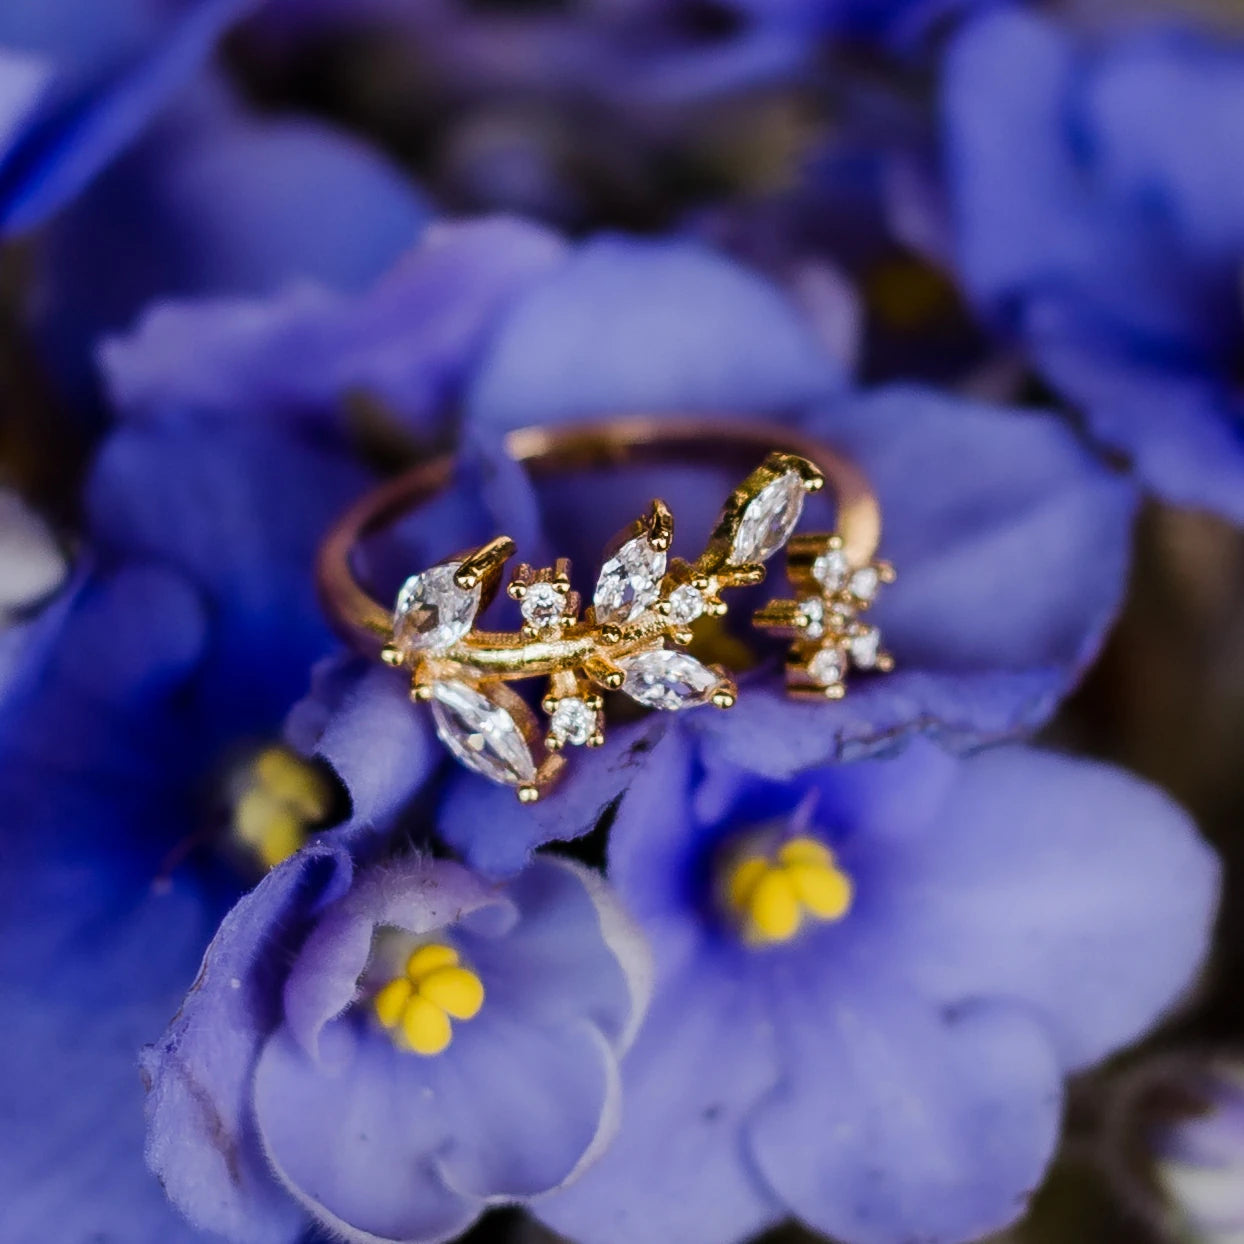 Jasmine Flower Ring